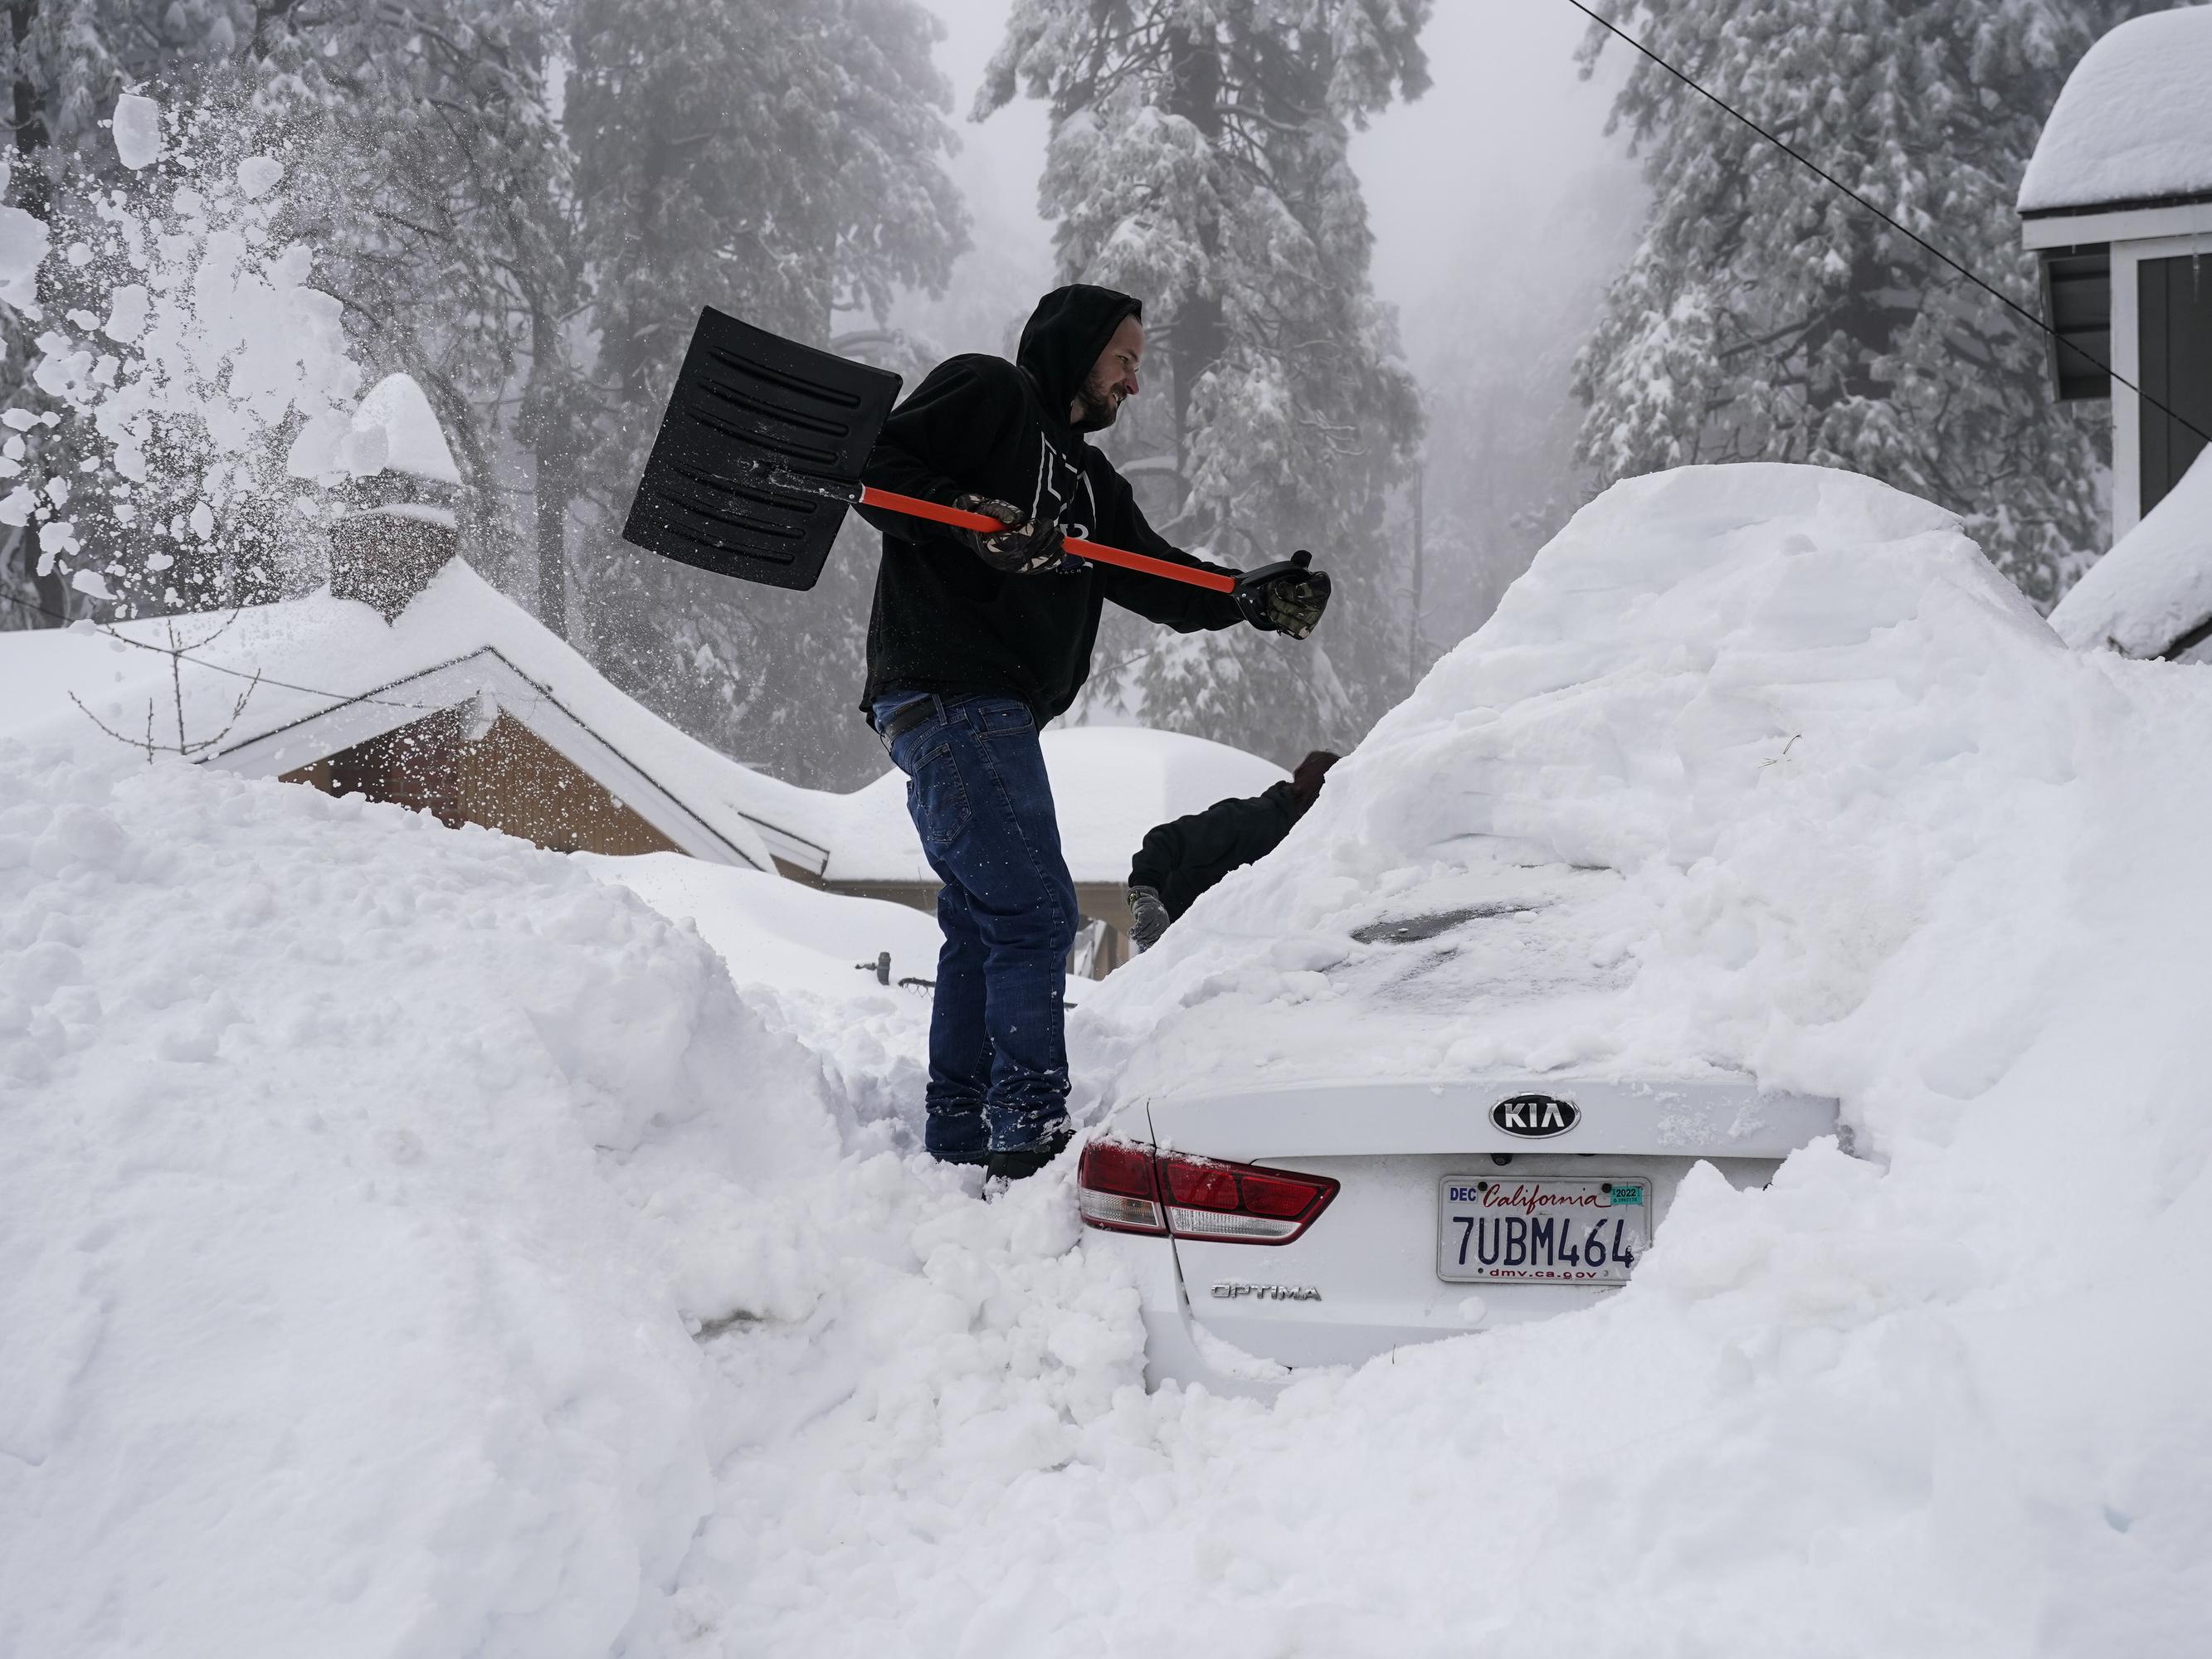 https://www.capradio.org/media/12268841/032823_tahoe-snow-p.jpg